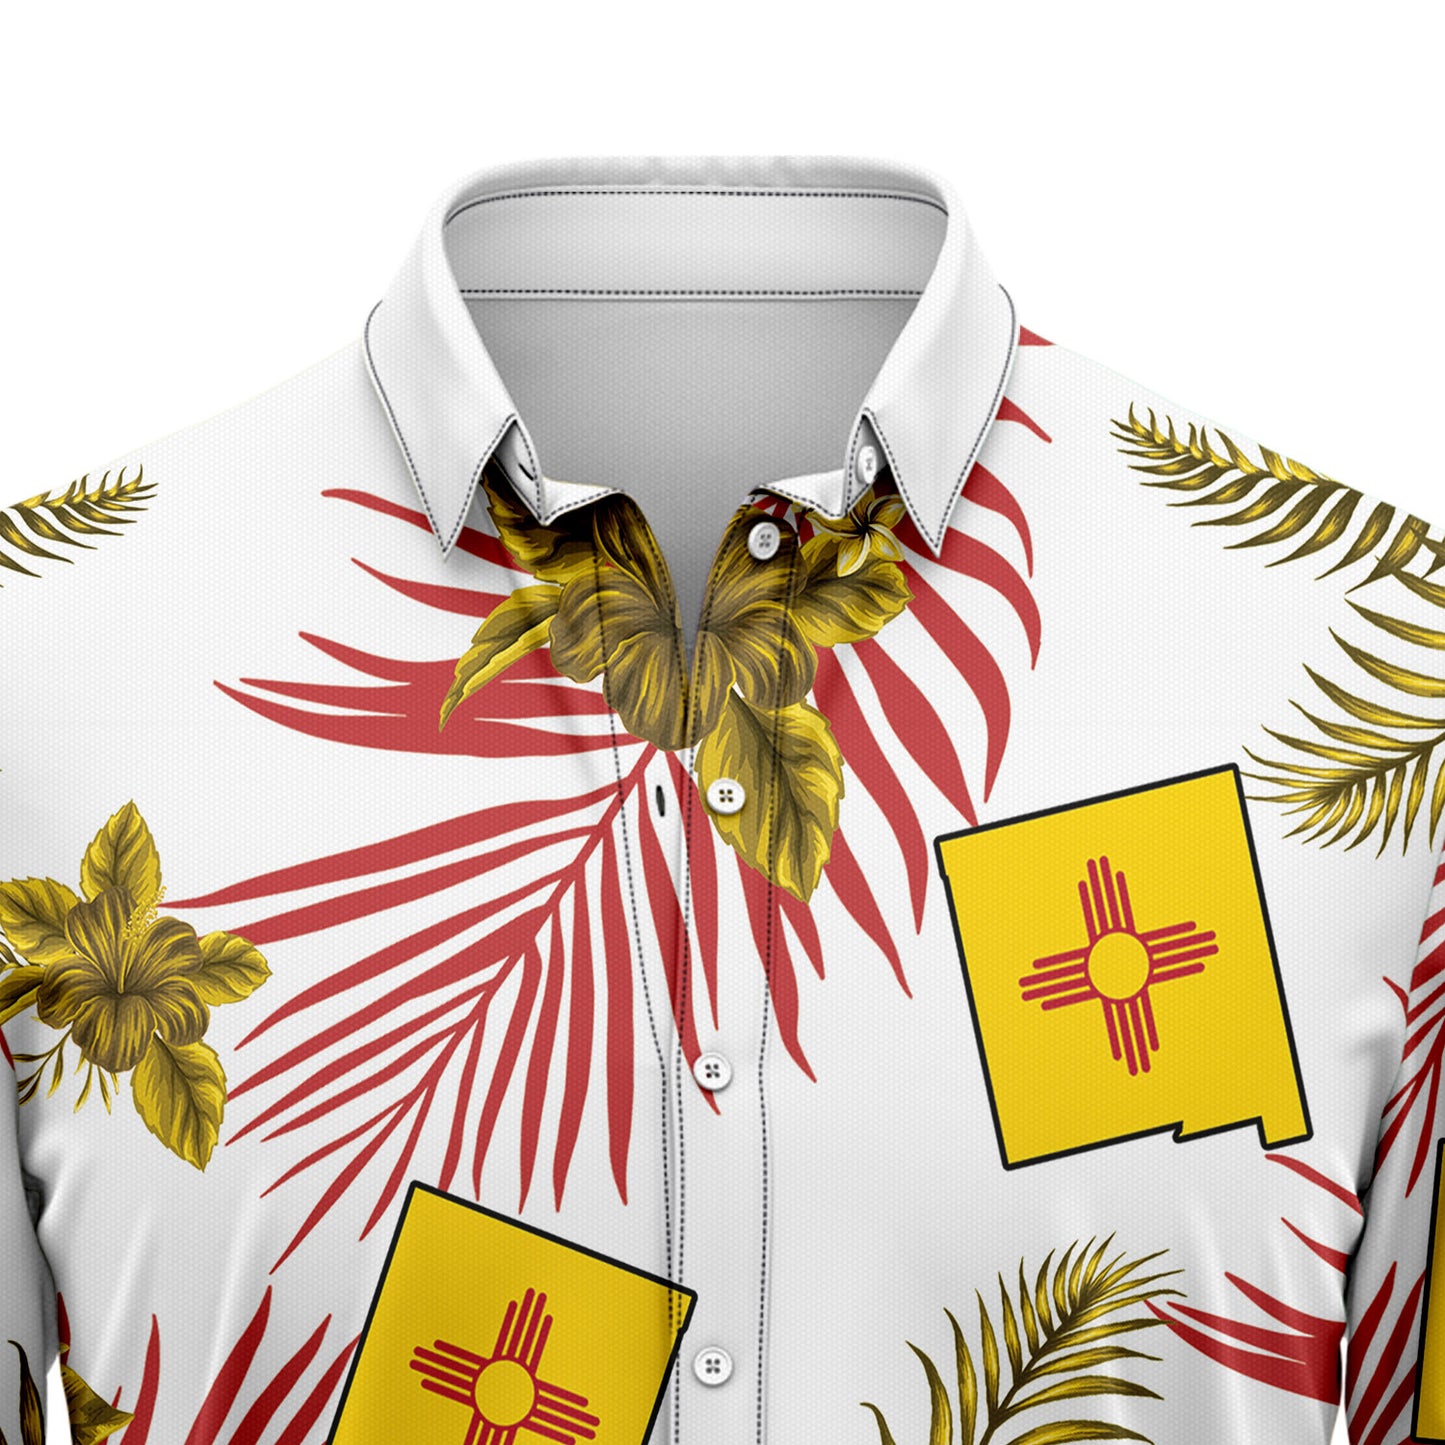 New Mexico Proud G5729 Hawaiian Shirt